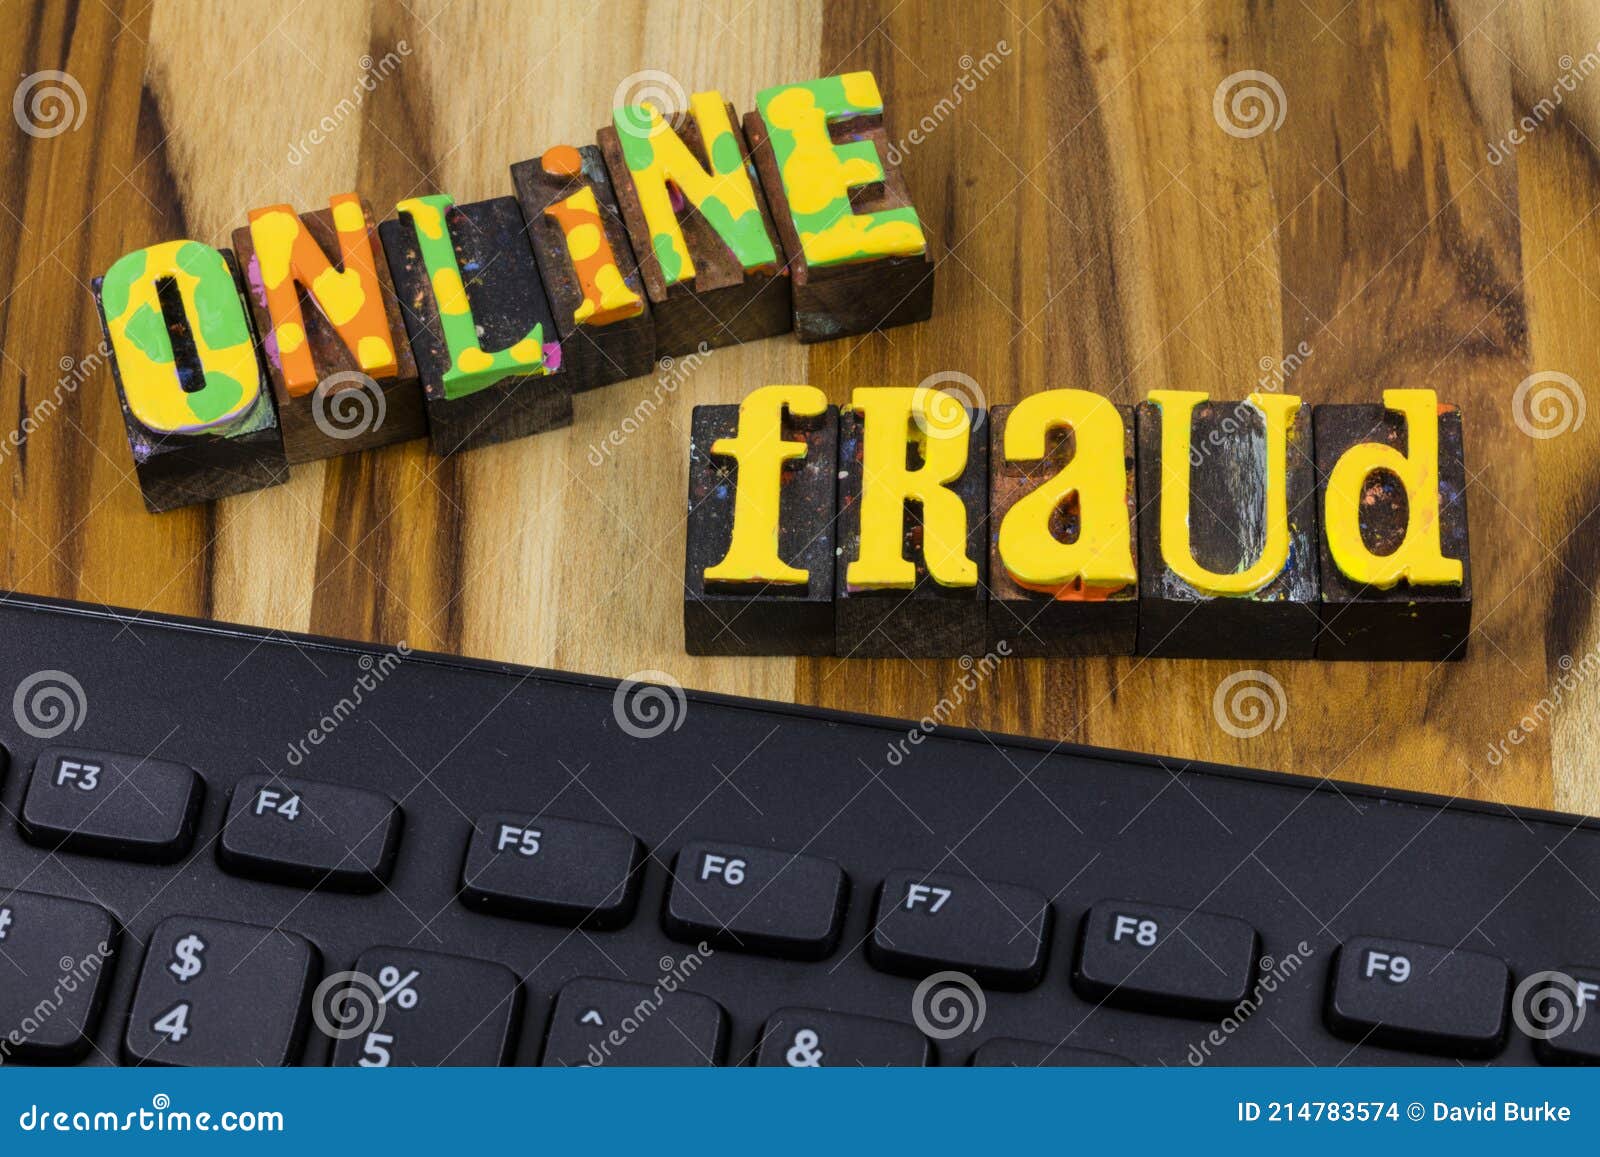 Als reactie op de Leerling grot Online Fraud Alert Security Internet Technology Computer Risk Stock Photo -  Image of protection, computer: 214783574